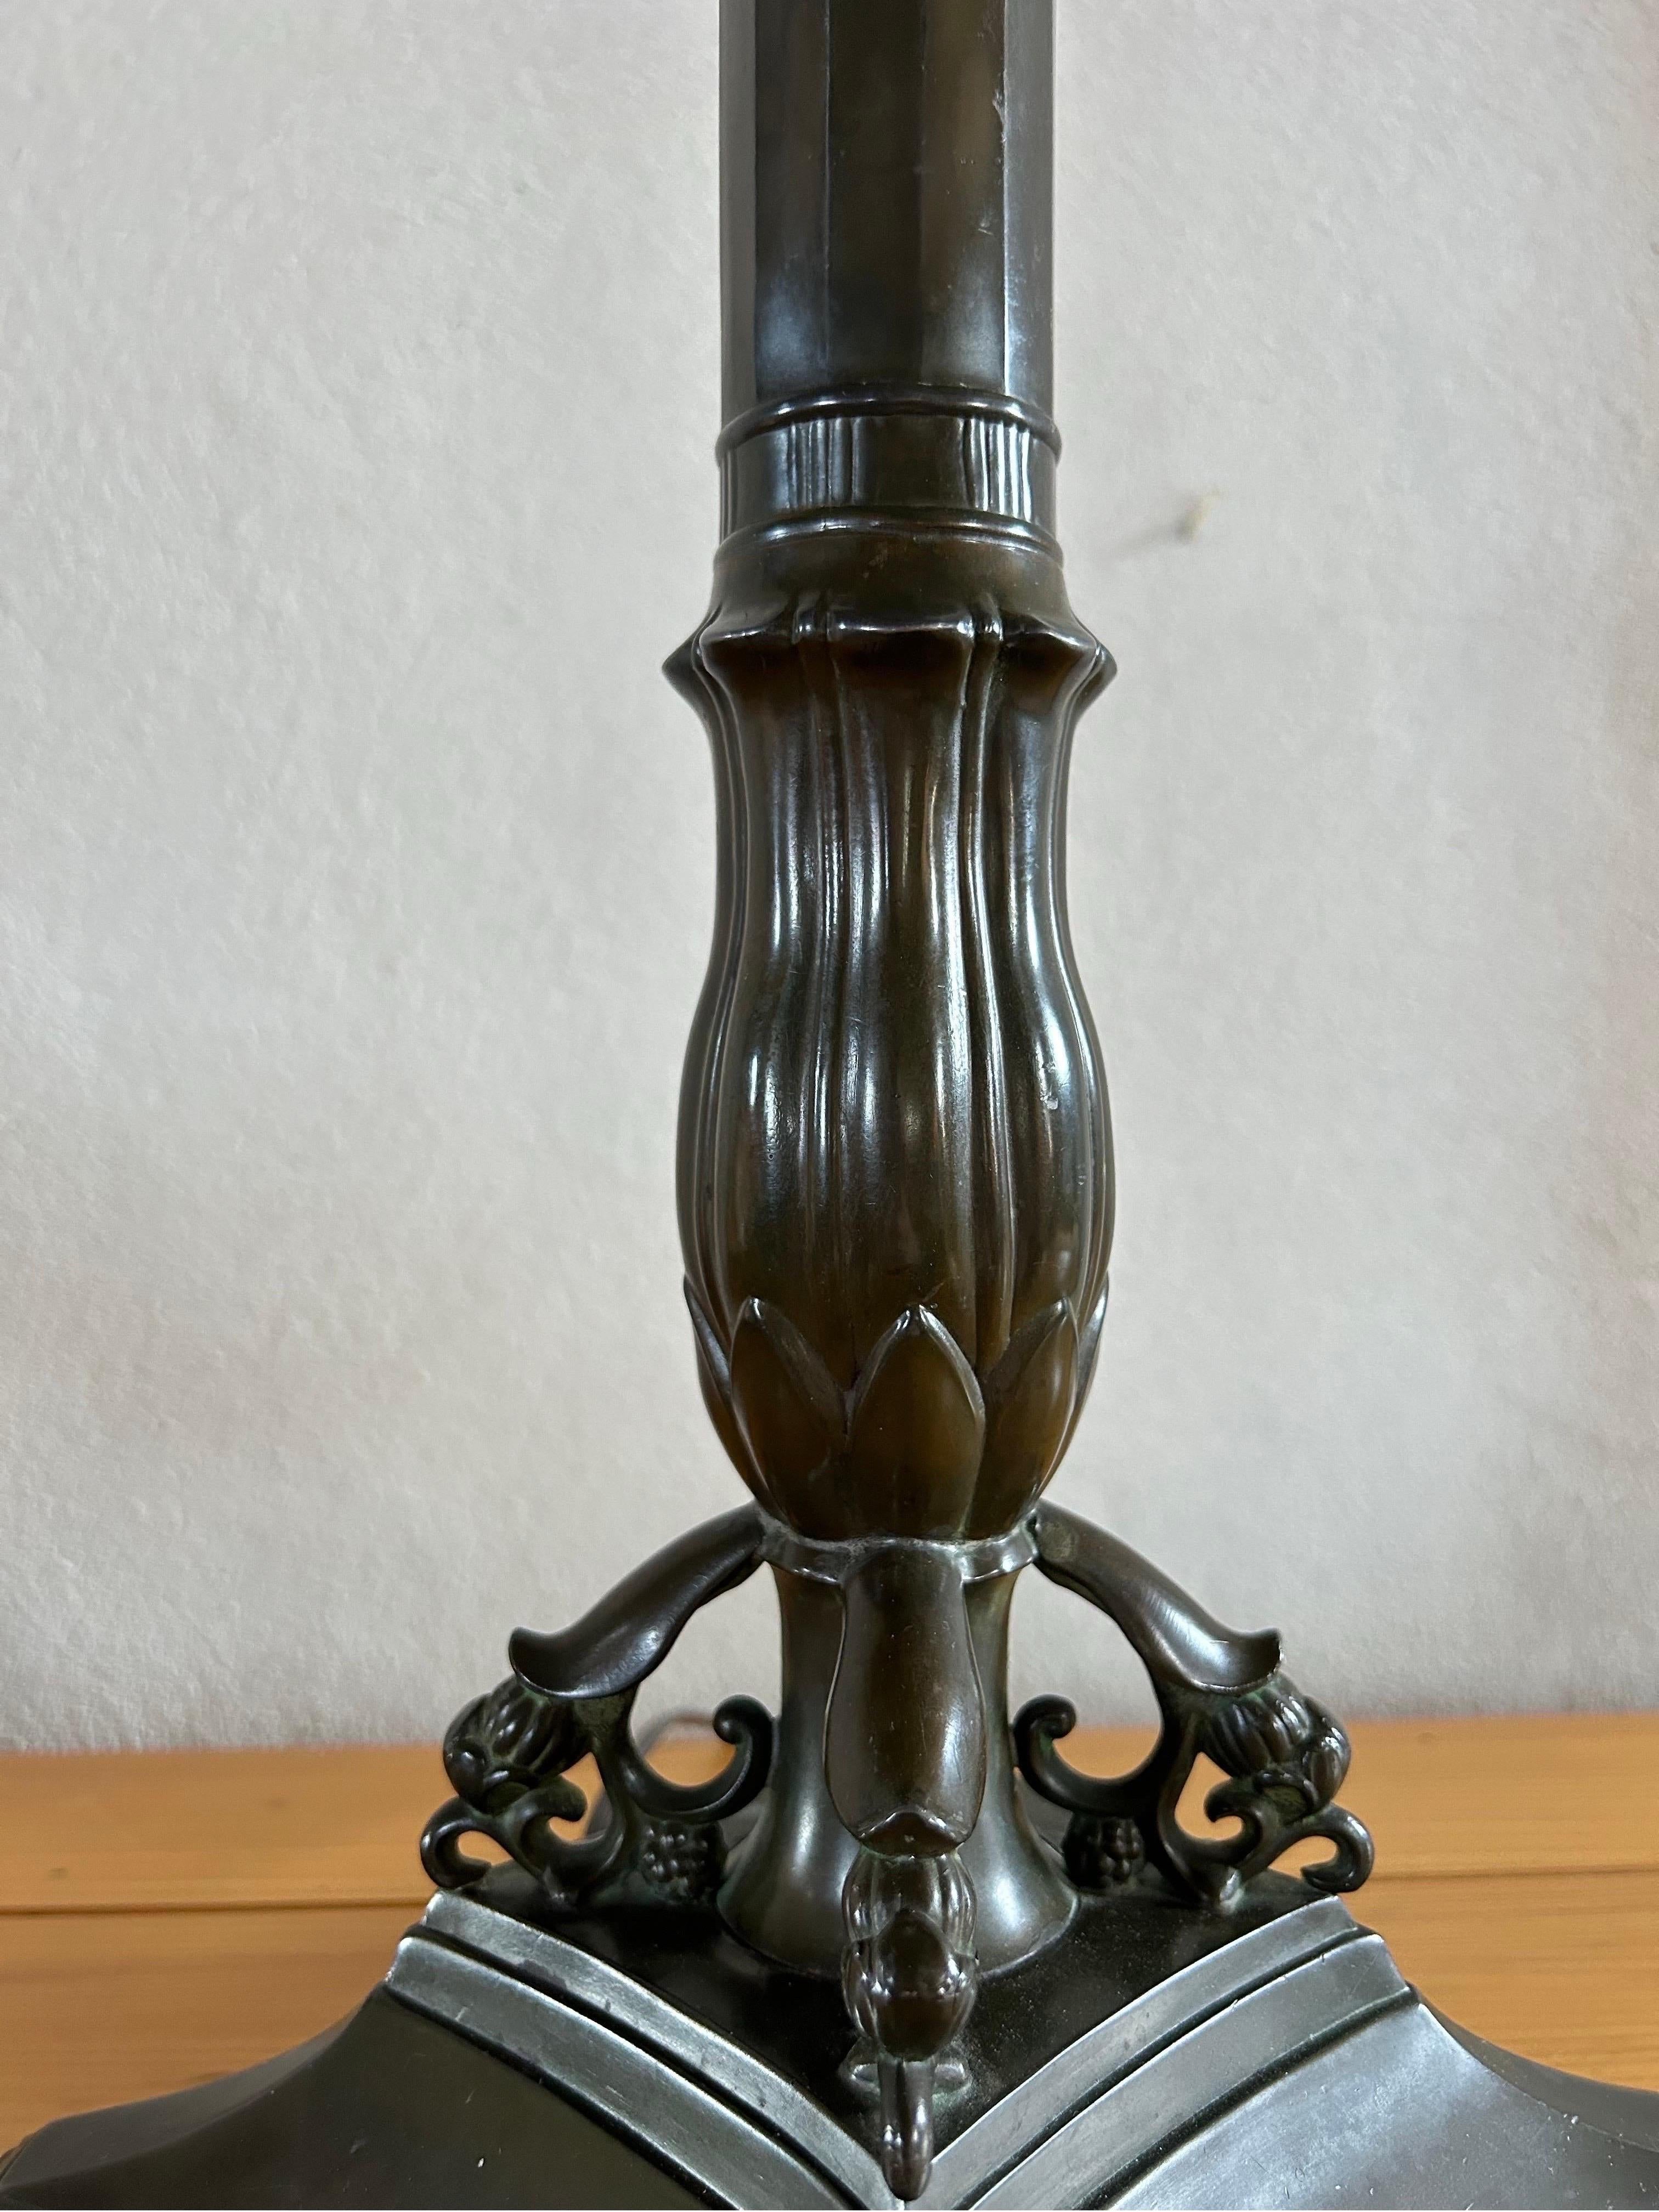 Seltene und hohe Just Andersen Disko Tischlampe aus Metall, Modell D8. Mit einer beeindruckenden Höhe von 72 cm (ohne Schirm) ist diese Lampe ein Zeugnis für die Eleganz und Raffinesse des dänischen Designs der 1920er Jahre.

Diese in Dänemark von